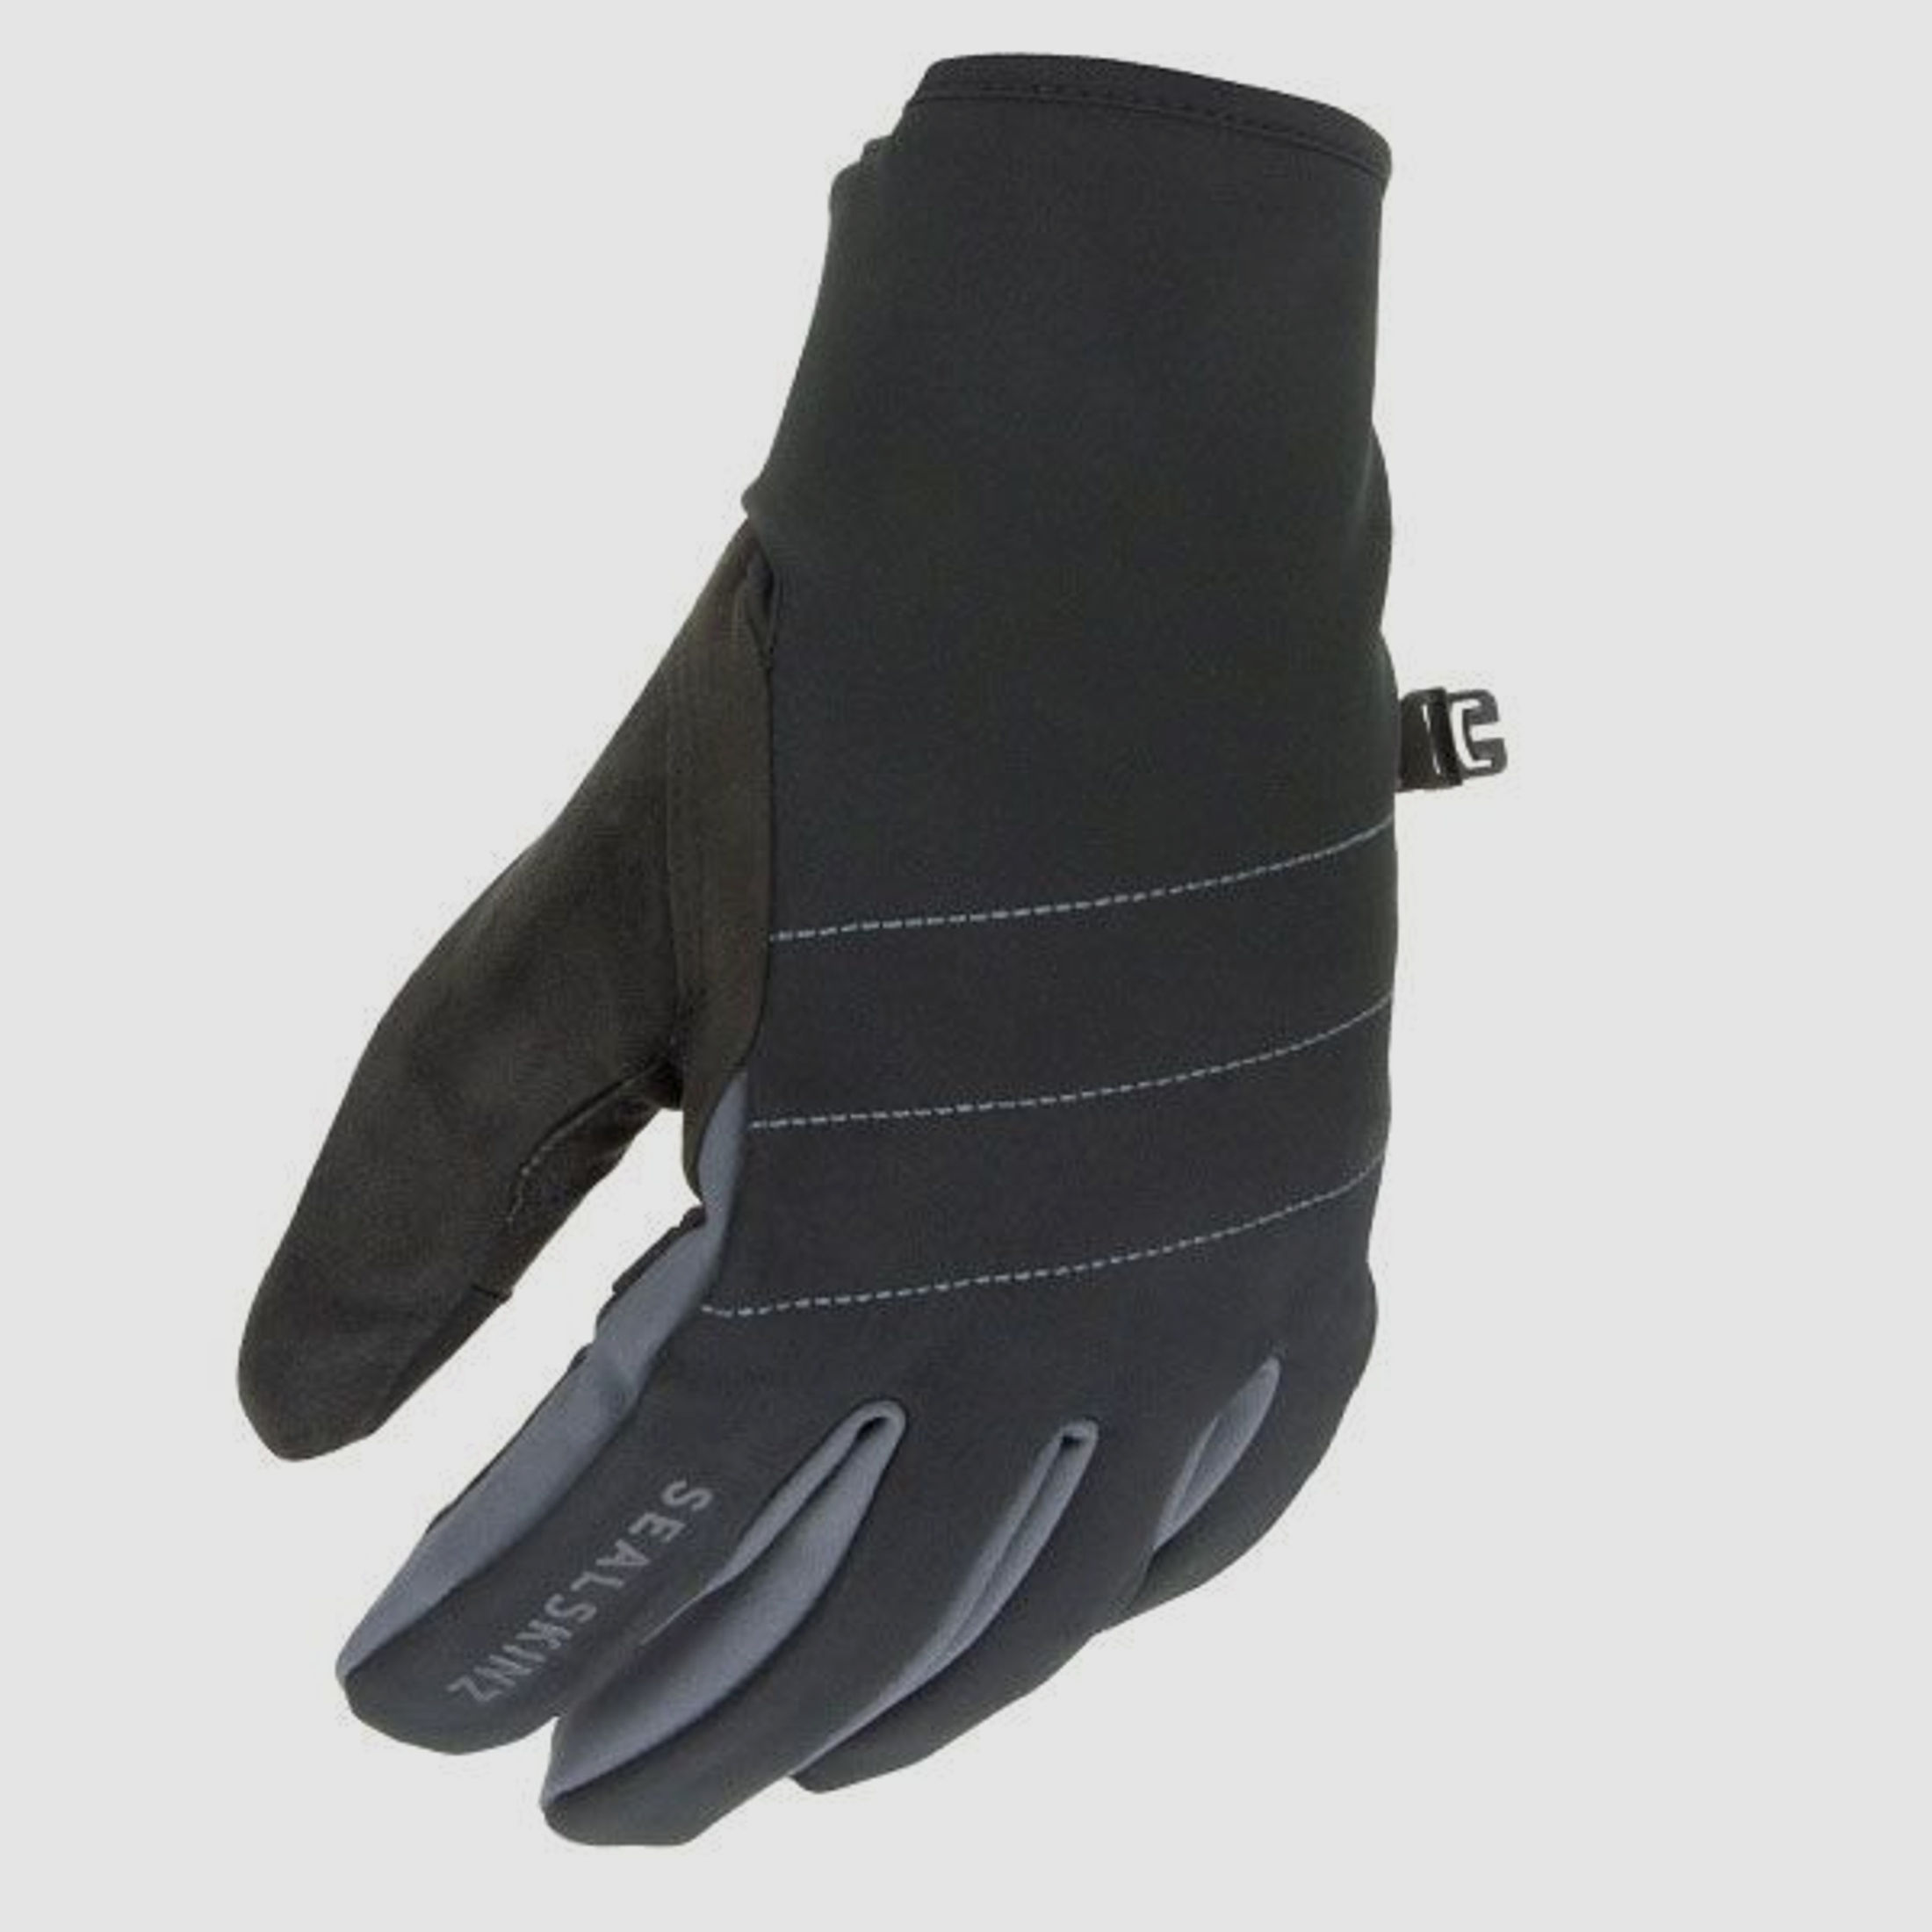 SealSkinz Sealskinz Allwetter-Handschuhe Lyng schwarz grau